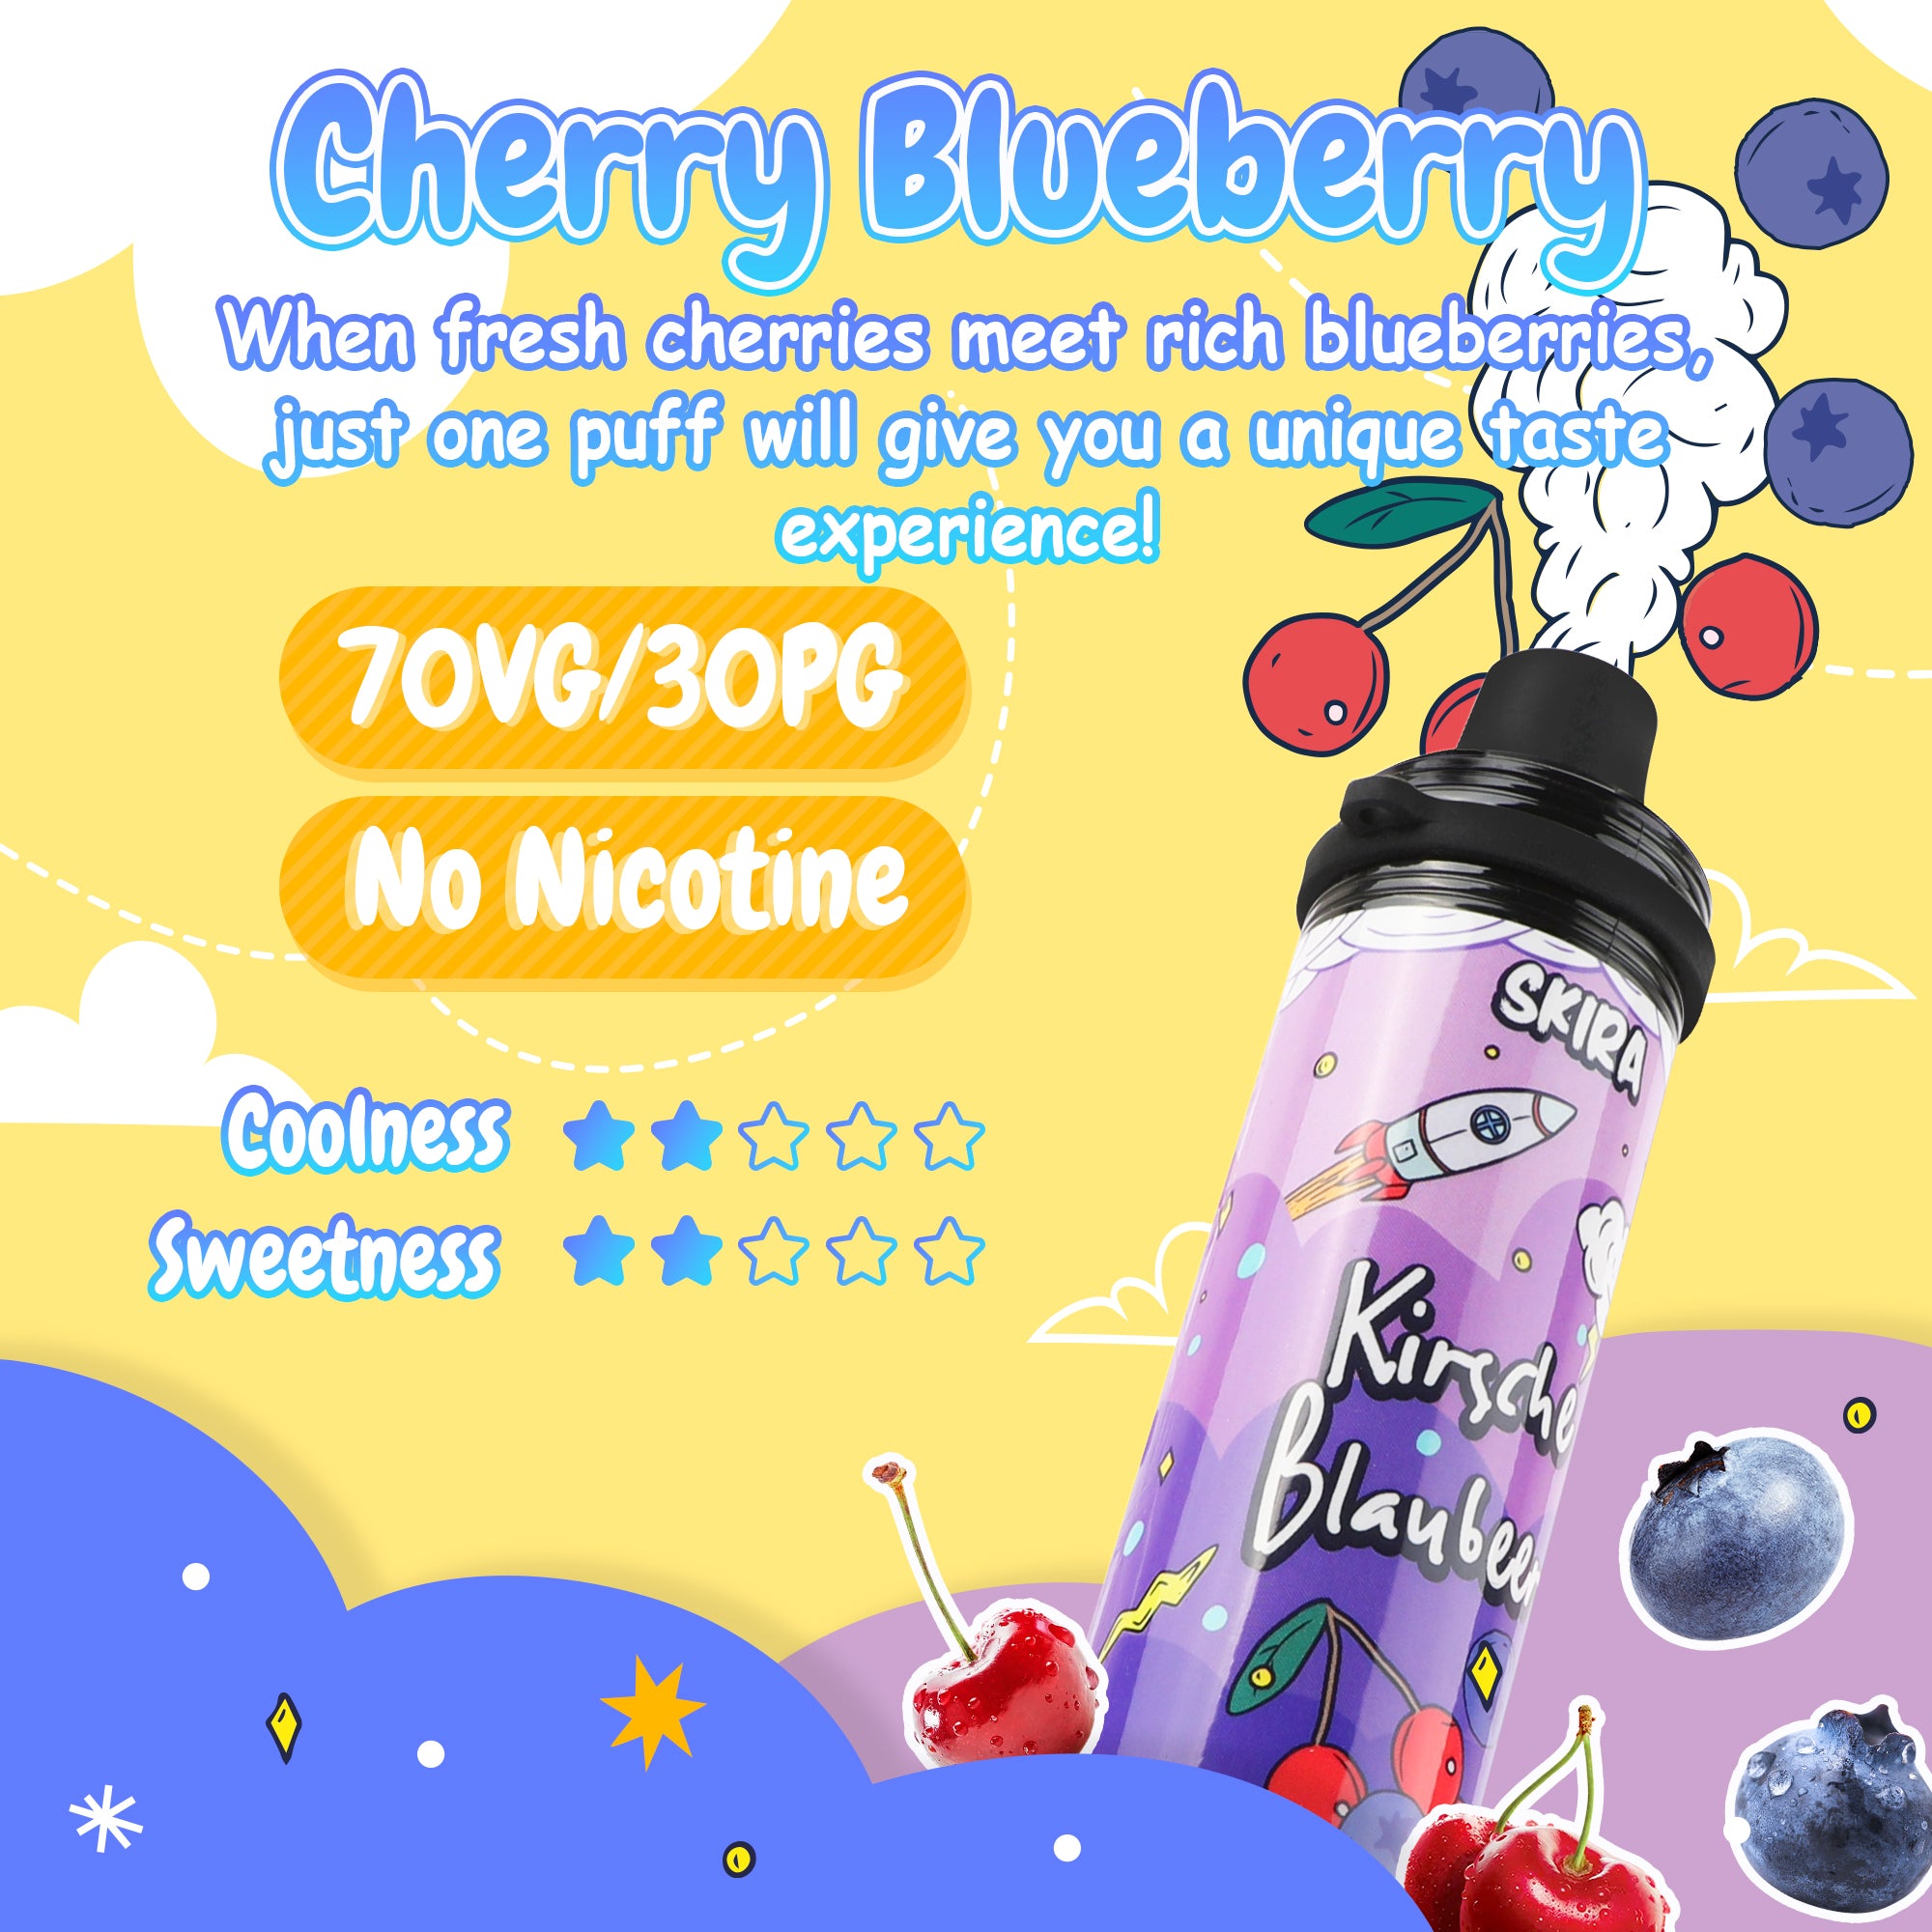 SKIRA Disposable Vape No Nicotine, Vape Pen 5000 Puffs, Cherry Blueberry Puff Bar